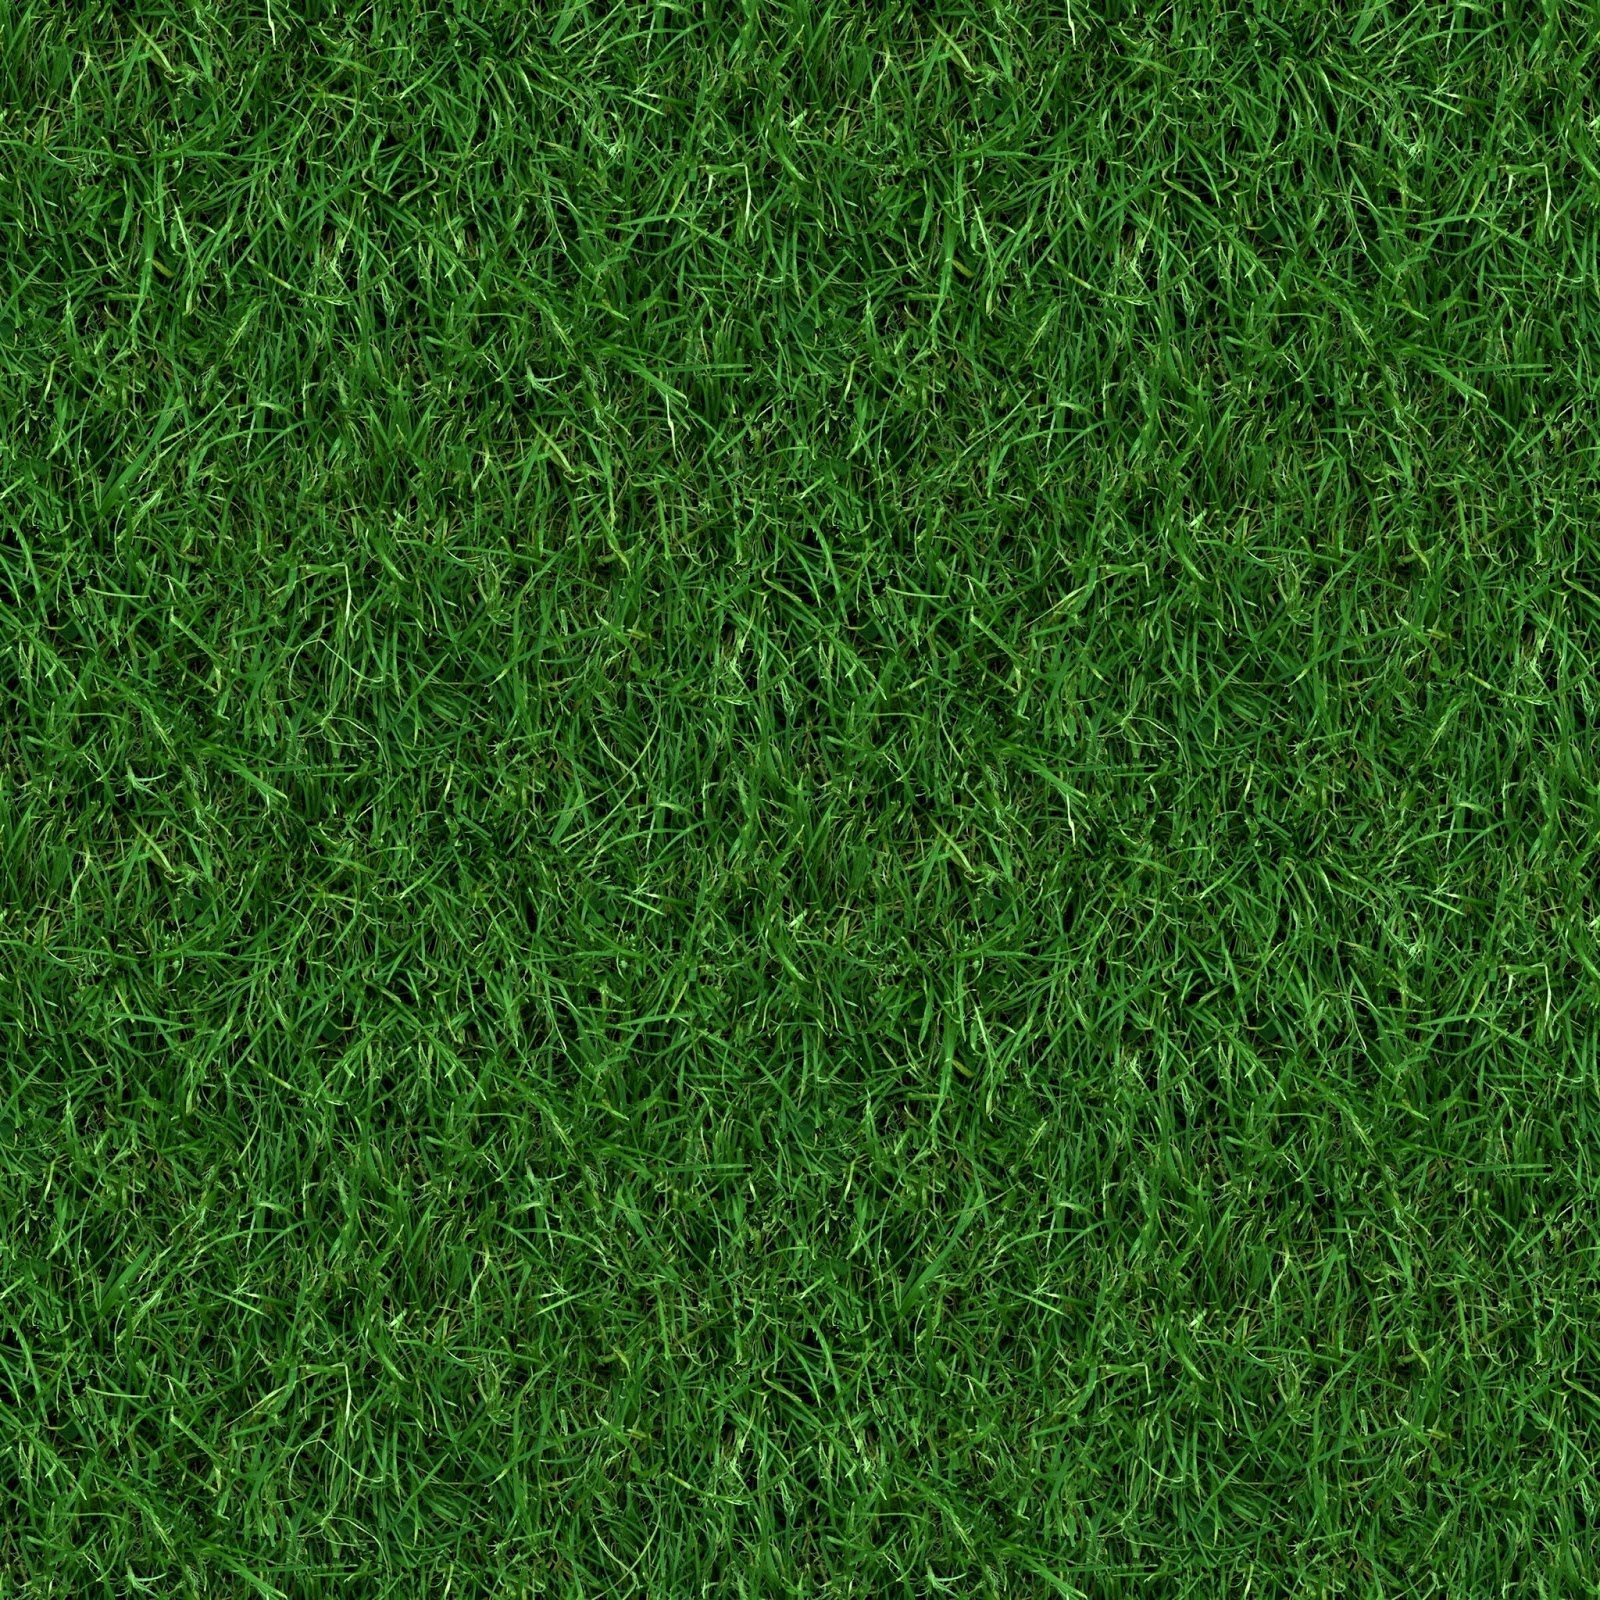 High Resolution Seamless Textures: (GRASS 4) seamless turf lawn green